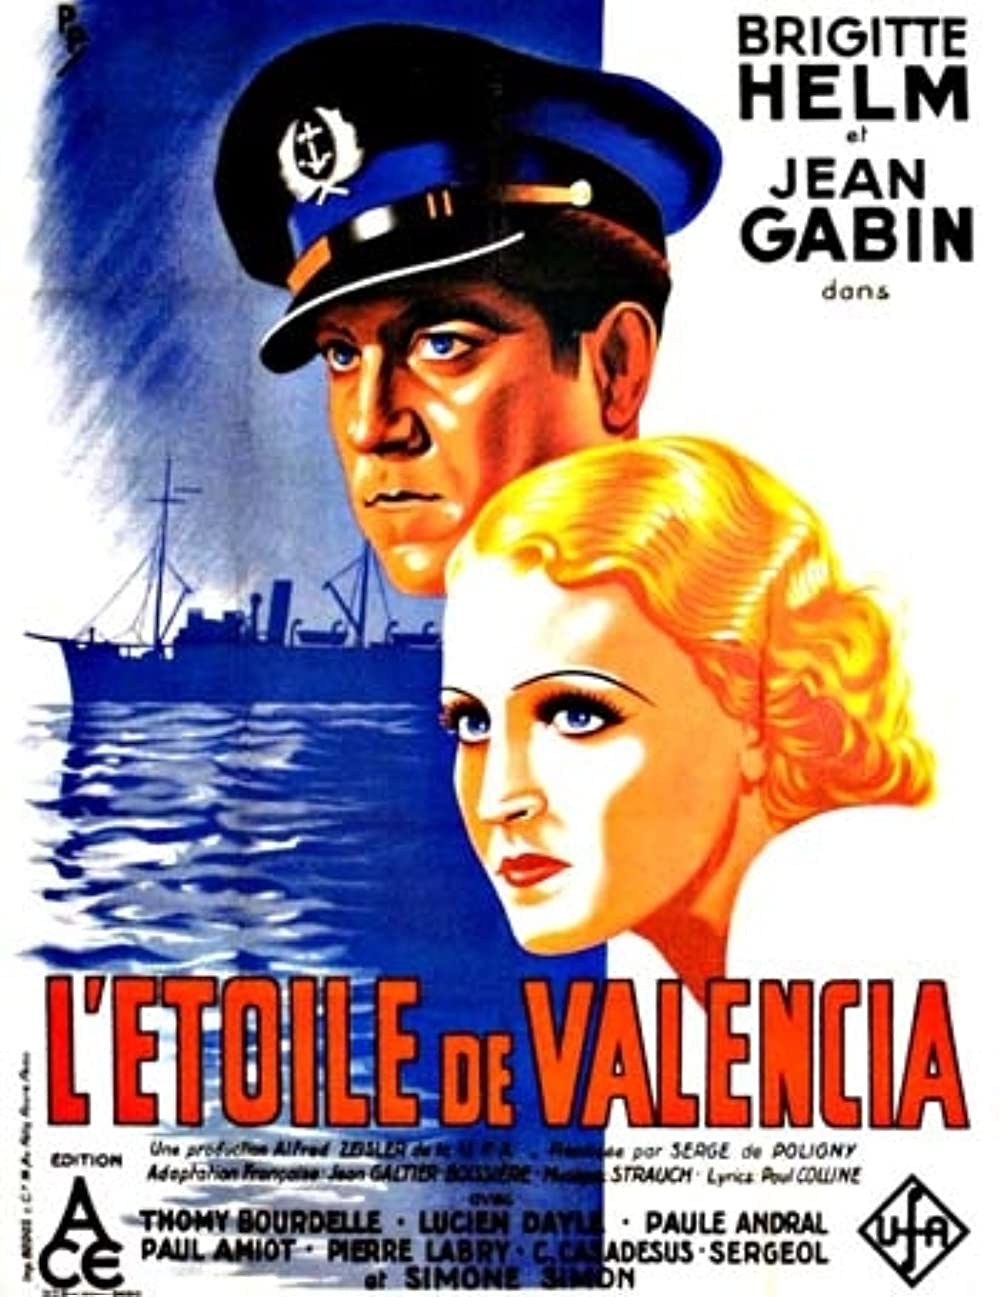 Filmbeschreibung zu Der Stern von Valencia